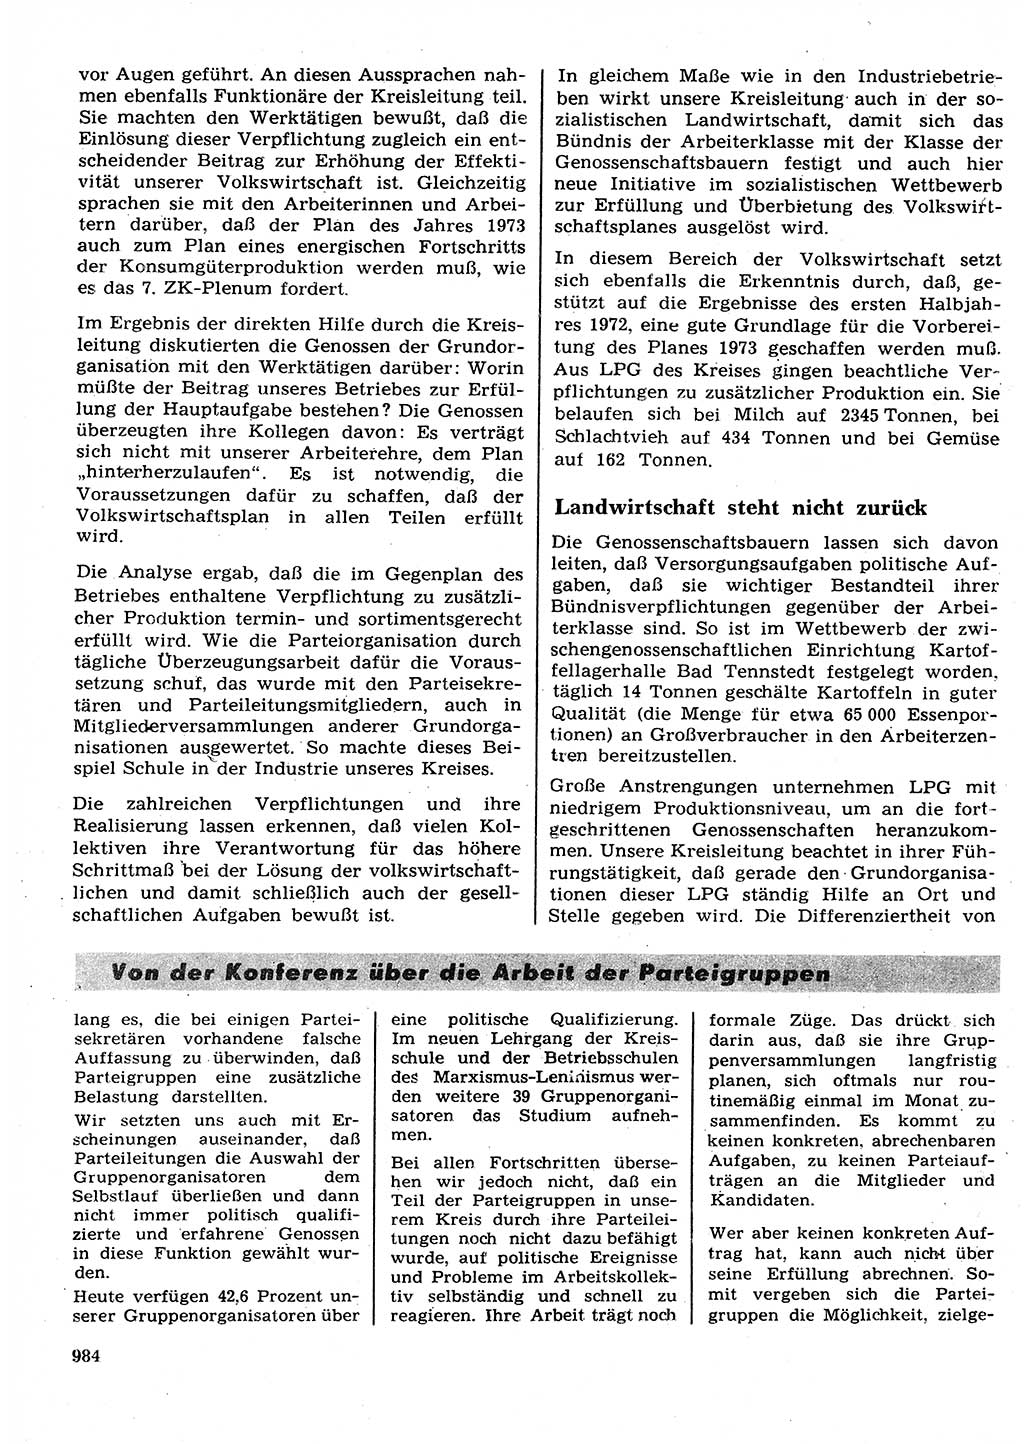 Neuer Weg (NW), Organ des Zentralkomitees (ZK) der SED (Sozialistische Einheitspartei Deutschlands) für Fragen des Parteilebens, 27. Jahrgang [Deutsche Demokratische Republik (DDR)] 1972, Seite 984 (NW ZK SED DDR 1972, S. 984)